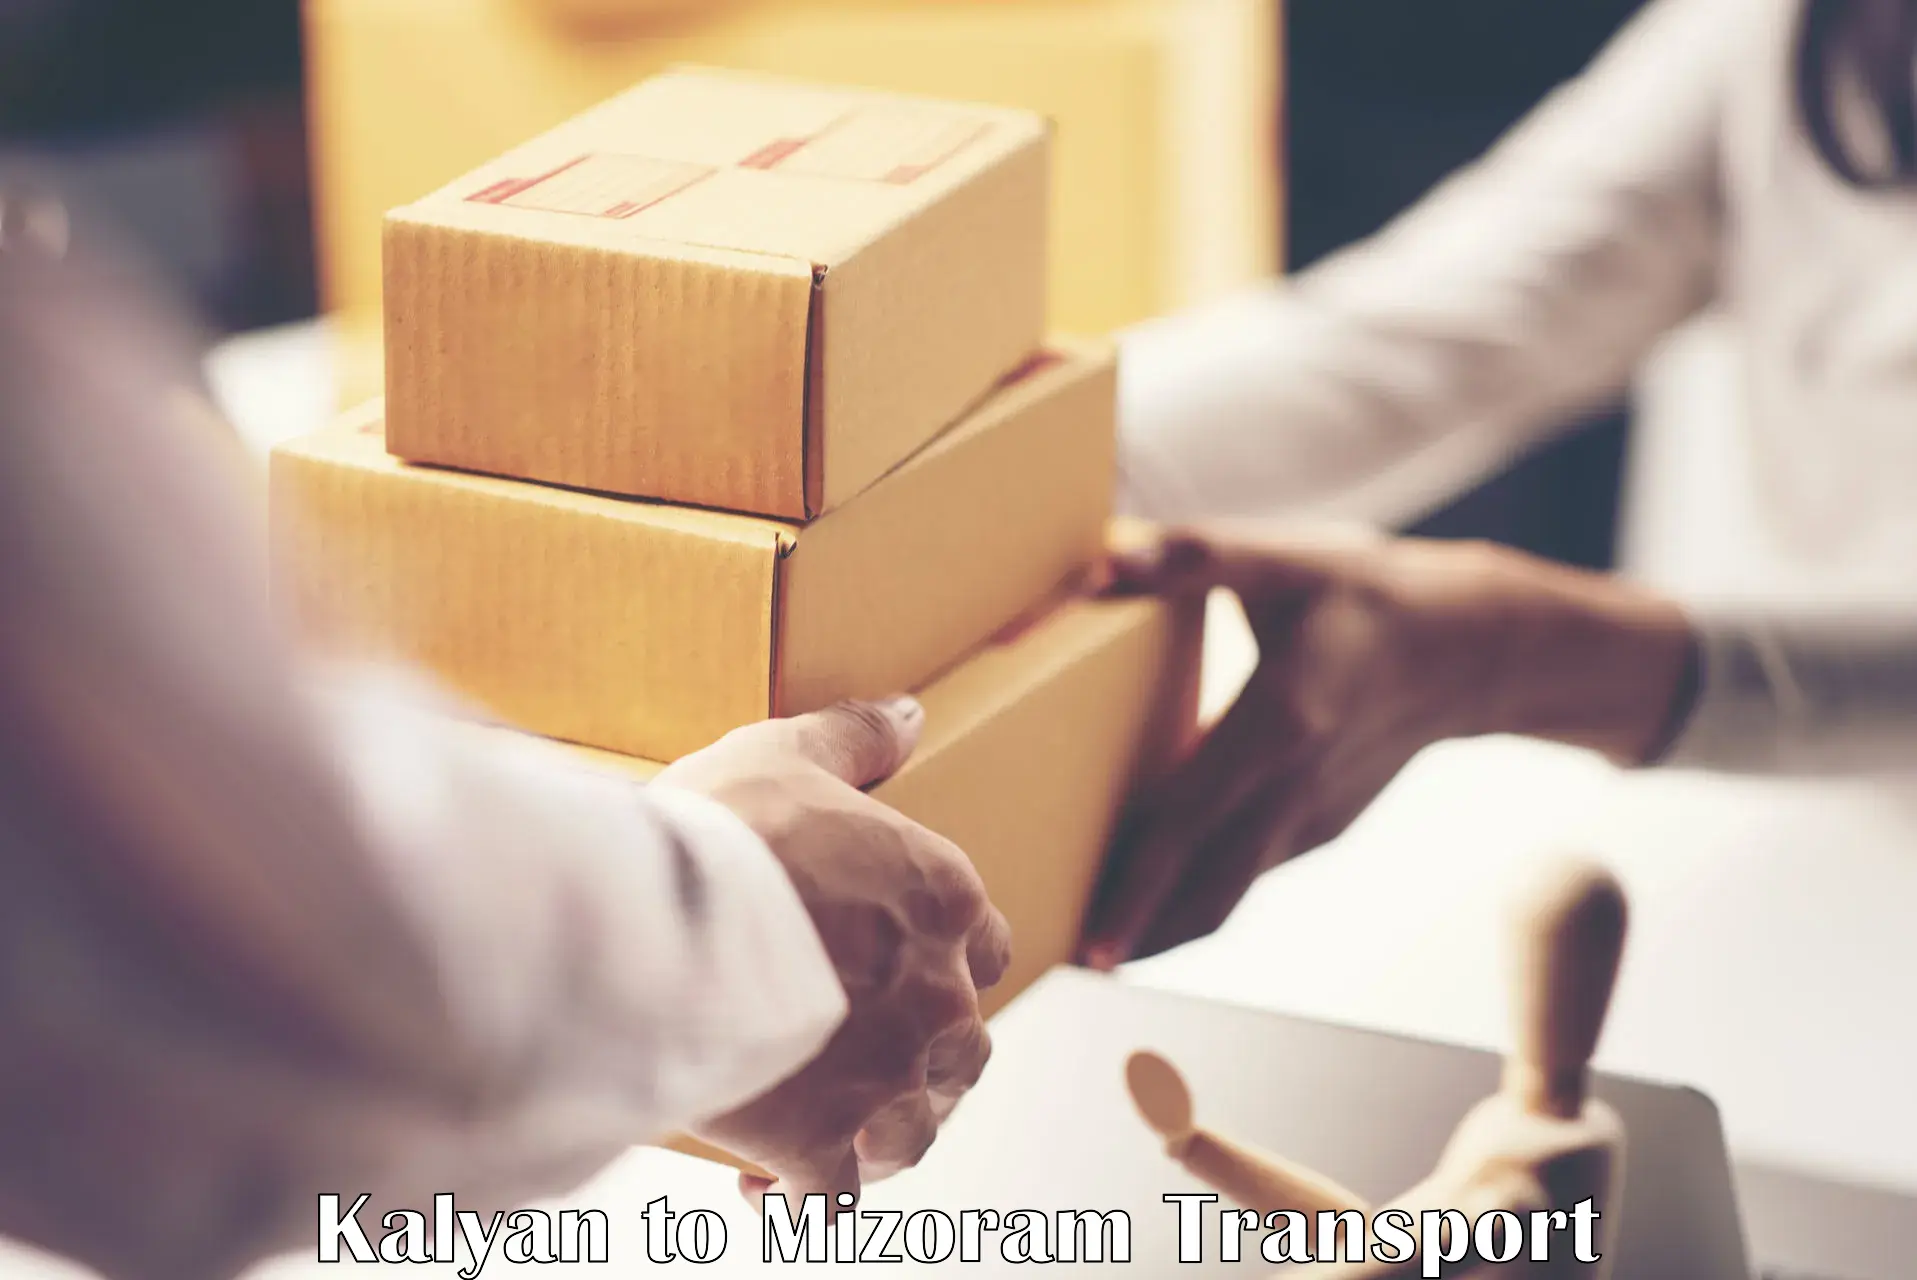 Shipping partner Kalyan to NIT Aizawl